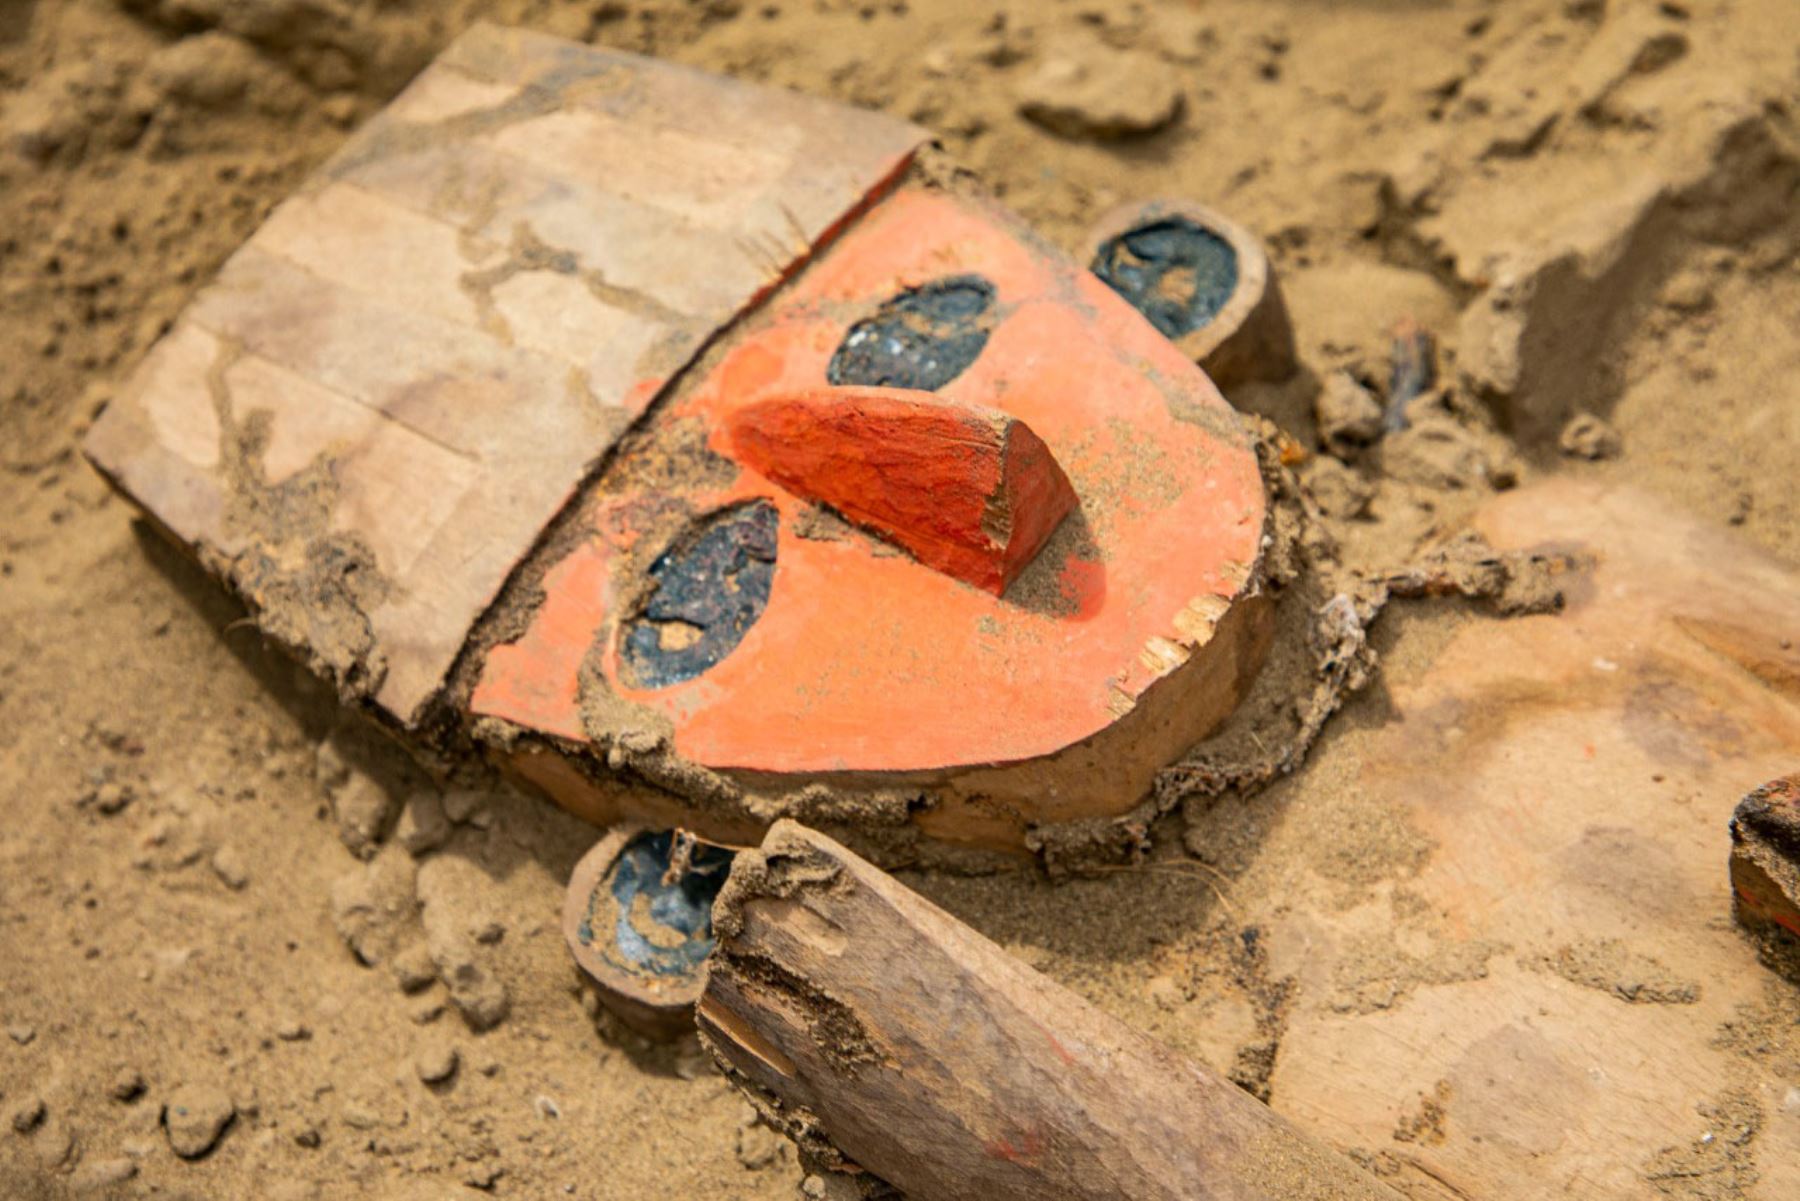 Una escultura de madera asociada a la cultura Chimú fue hallada por arqueólogos durante el desarrollo de la tercera etapa de los trabajos de excavación y conservación que se ejecutan en la huaca Takaynamo, arquitectura piramidal ubicado en la zona norte del complejo arqueológico Chan Chan, en el distrito de La Esperanza, provincia de Trujillo, región La Libertad.
Foto: Proyecto Especial Complejo Arqueológico Chan Chan (Pecach)